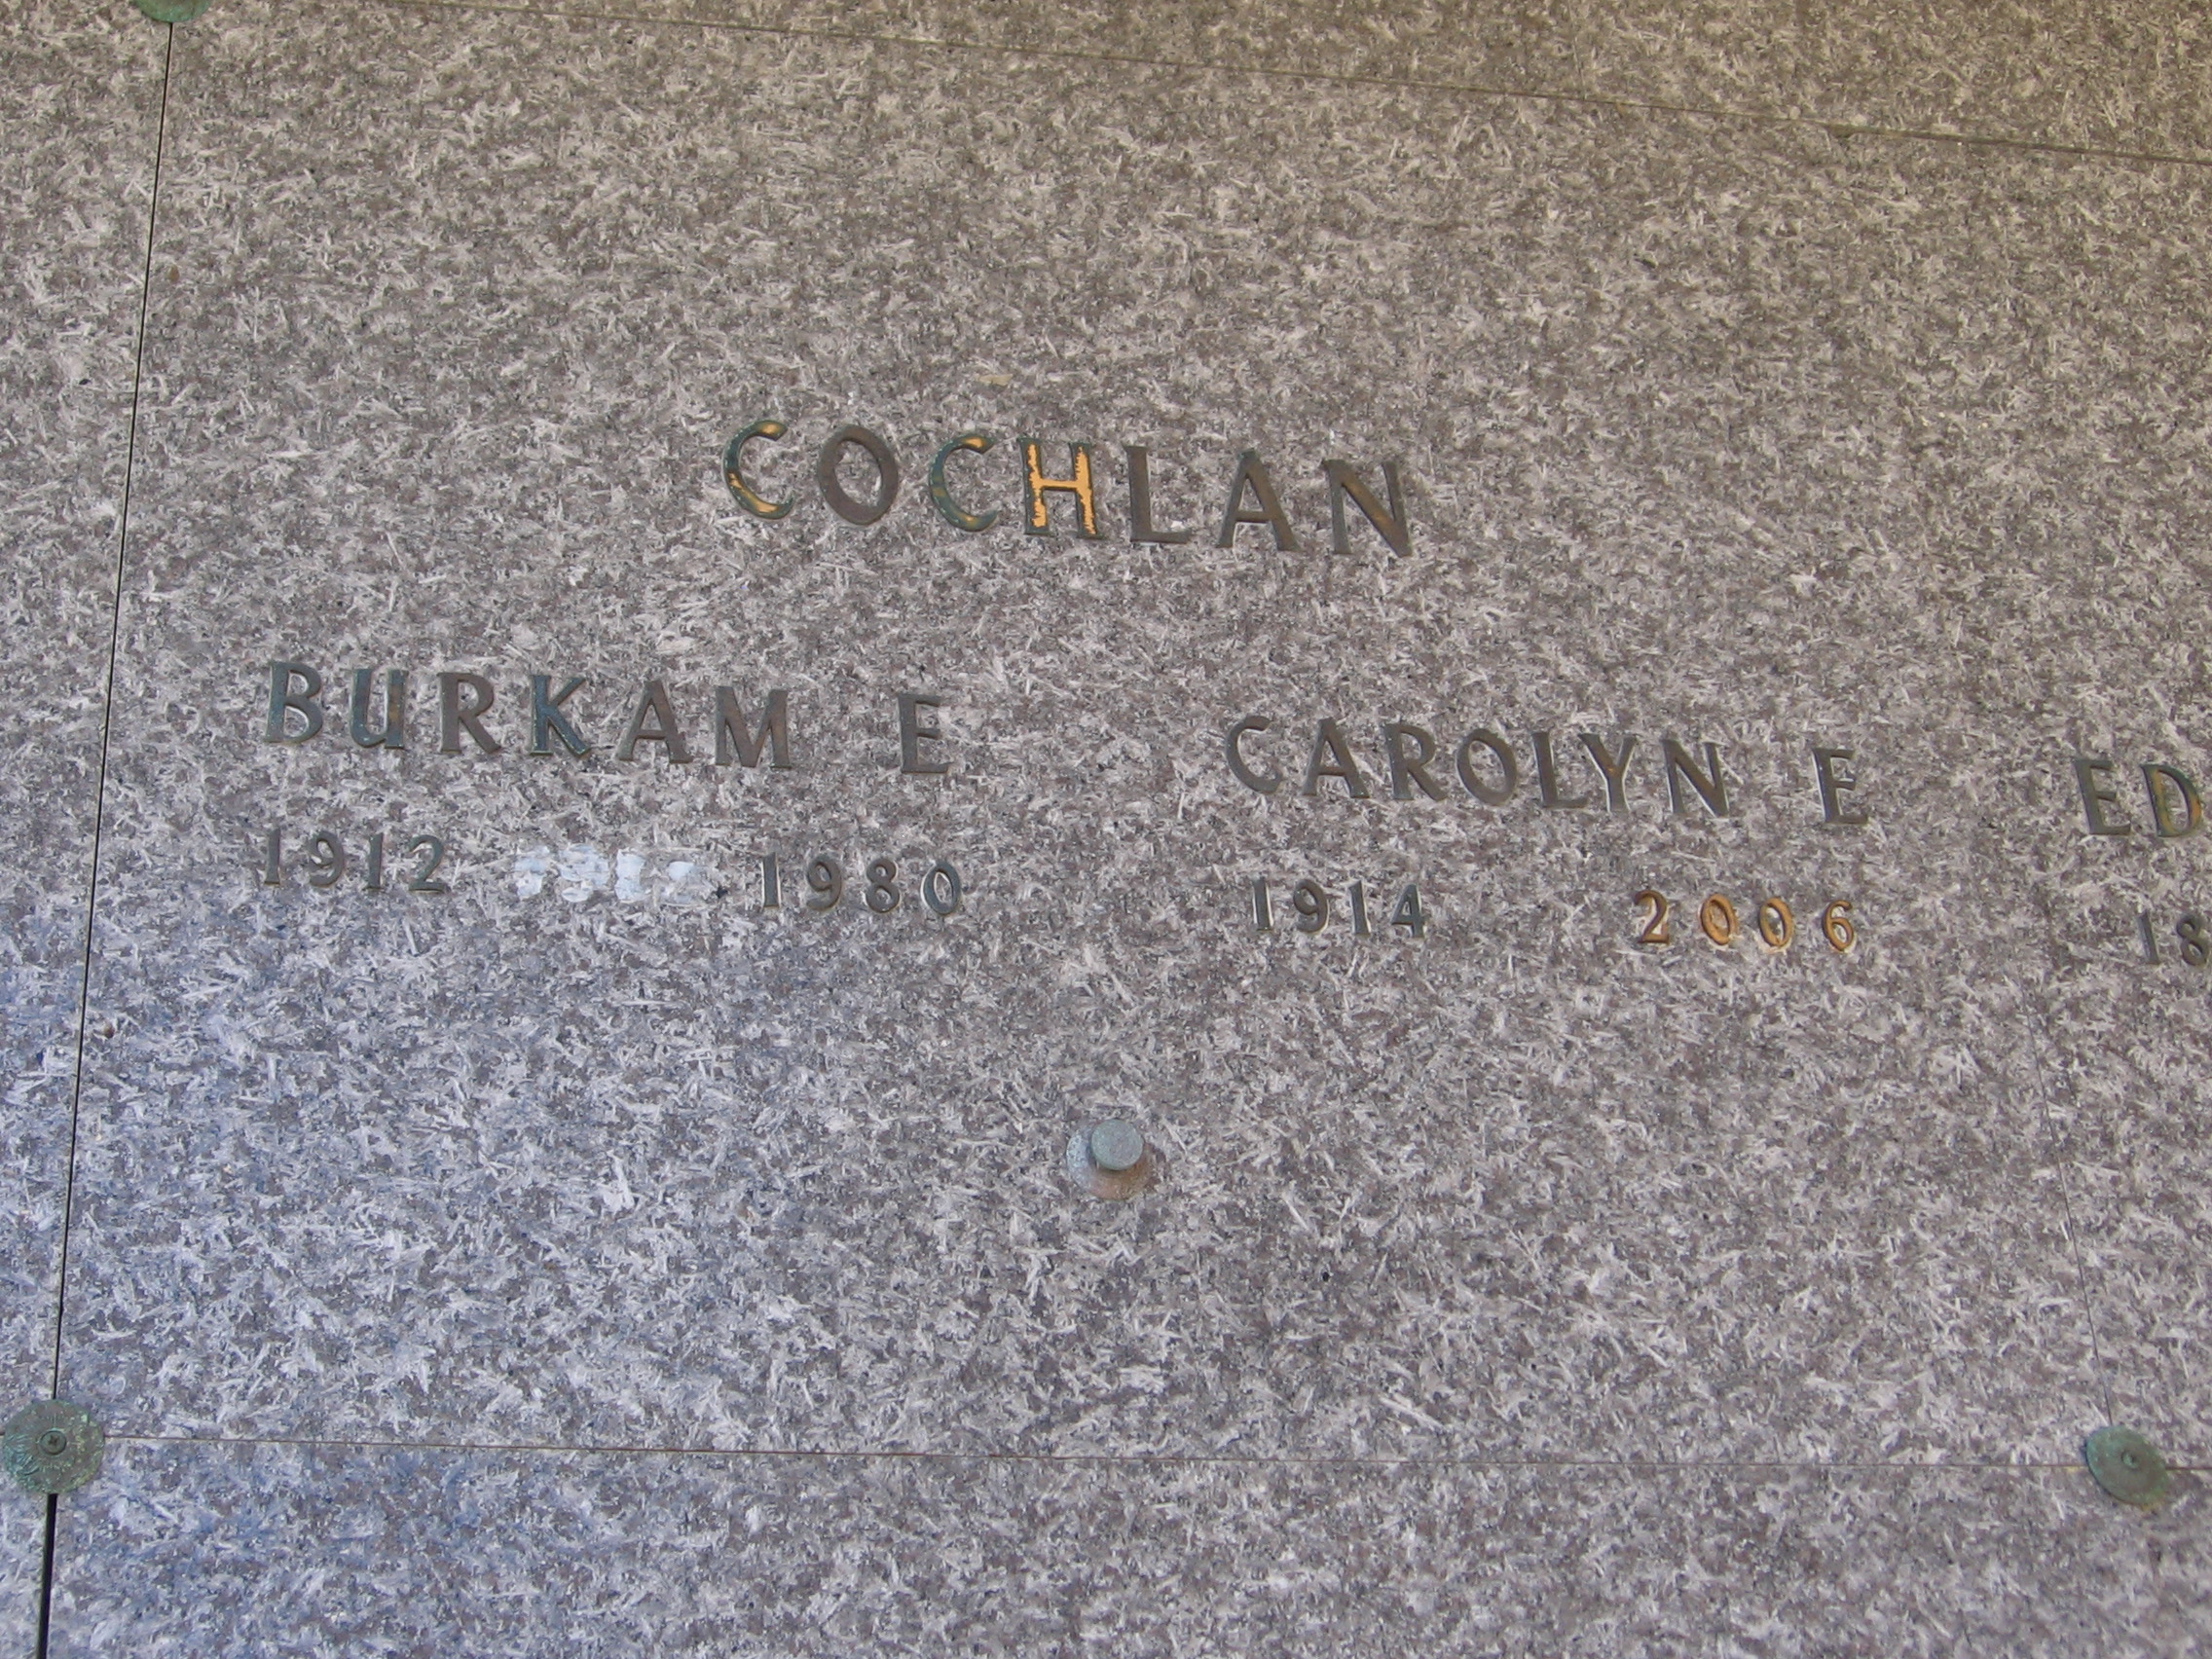 Carolyn E Cochlan